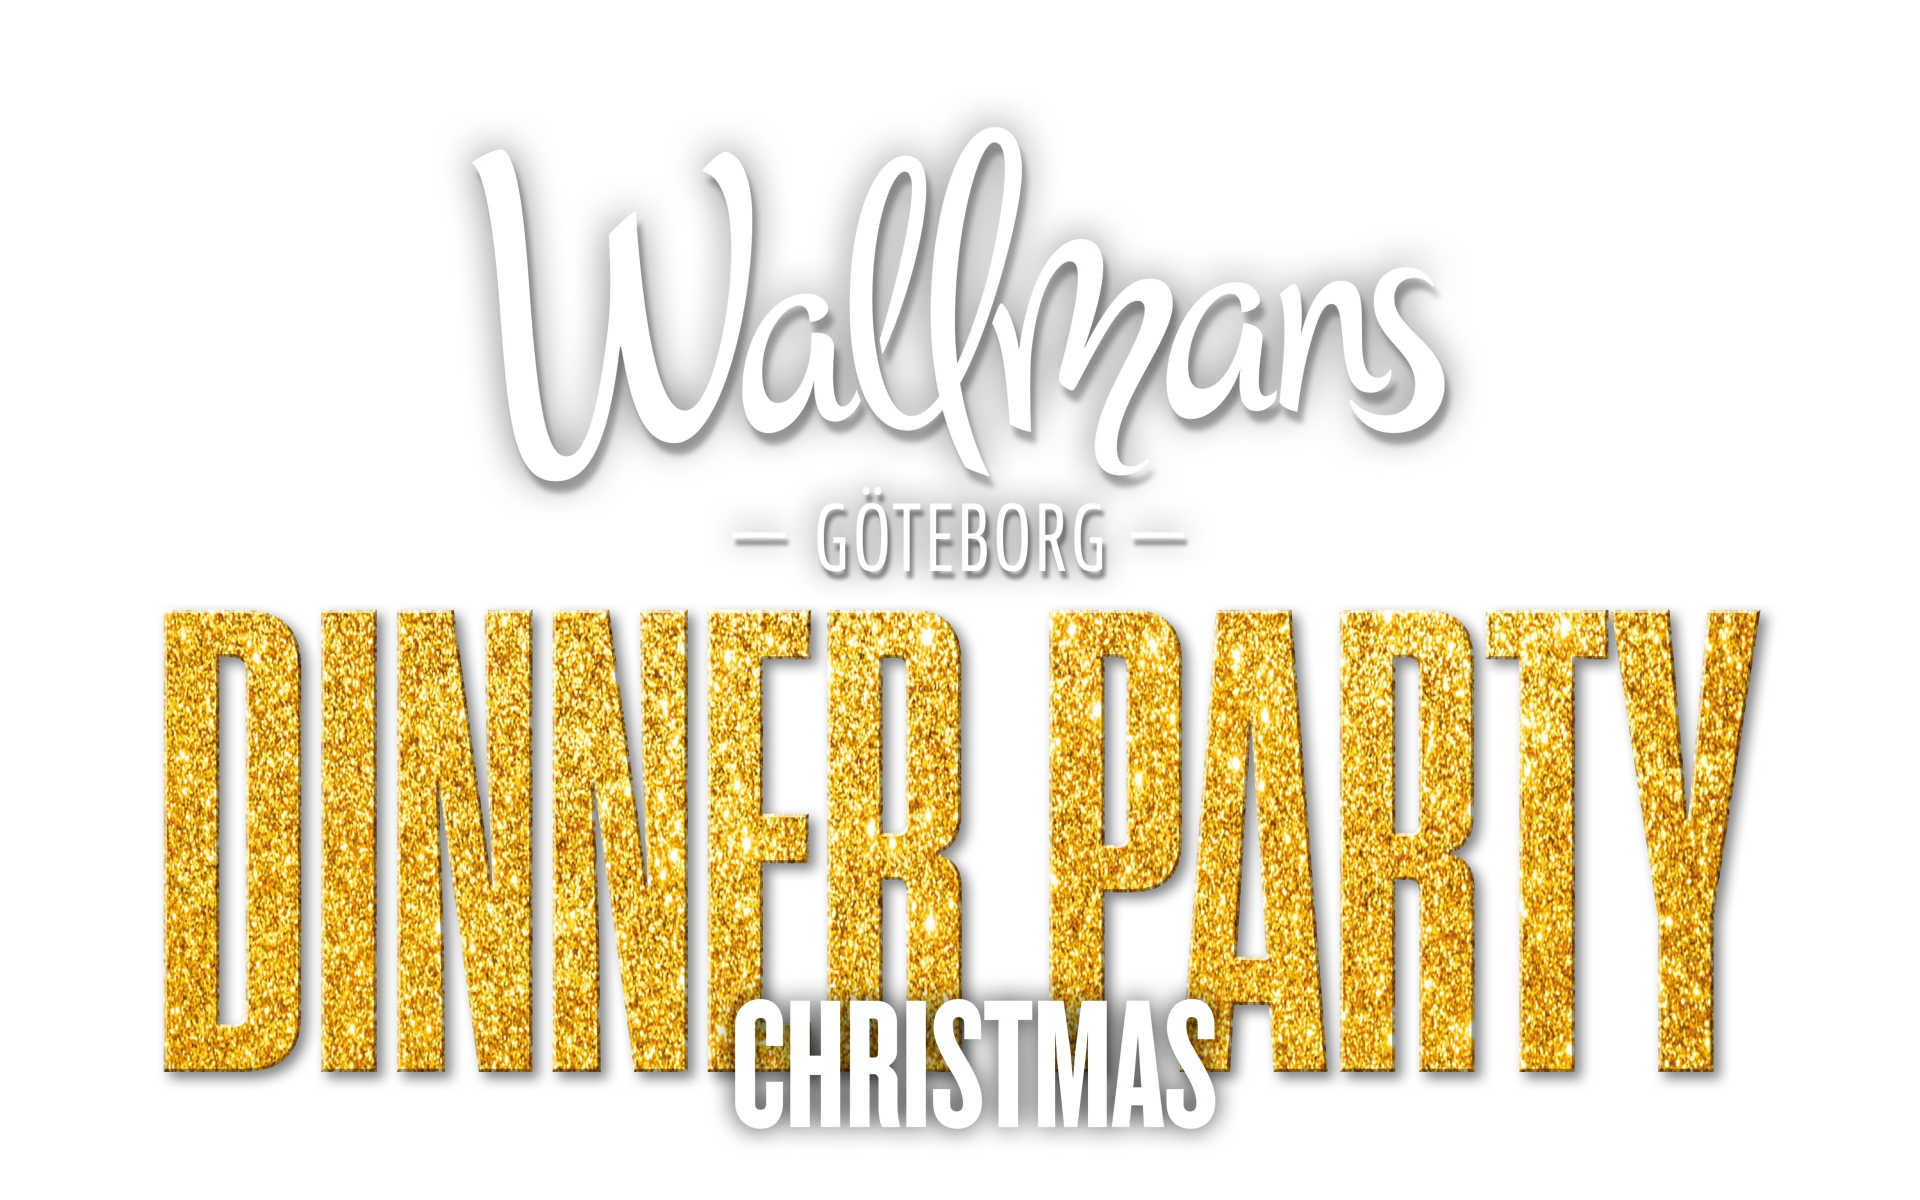 Wallmans christmas party logo 